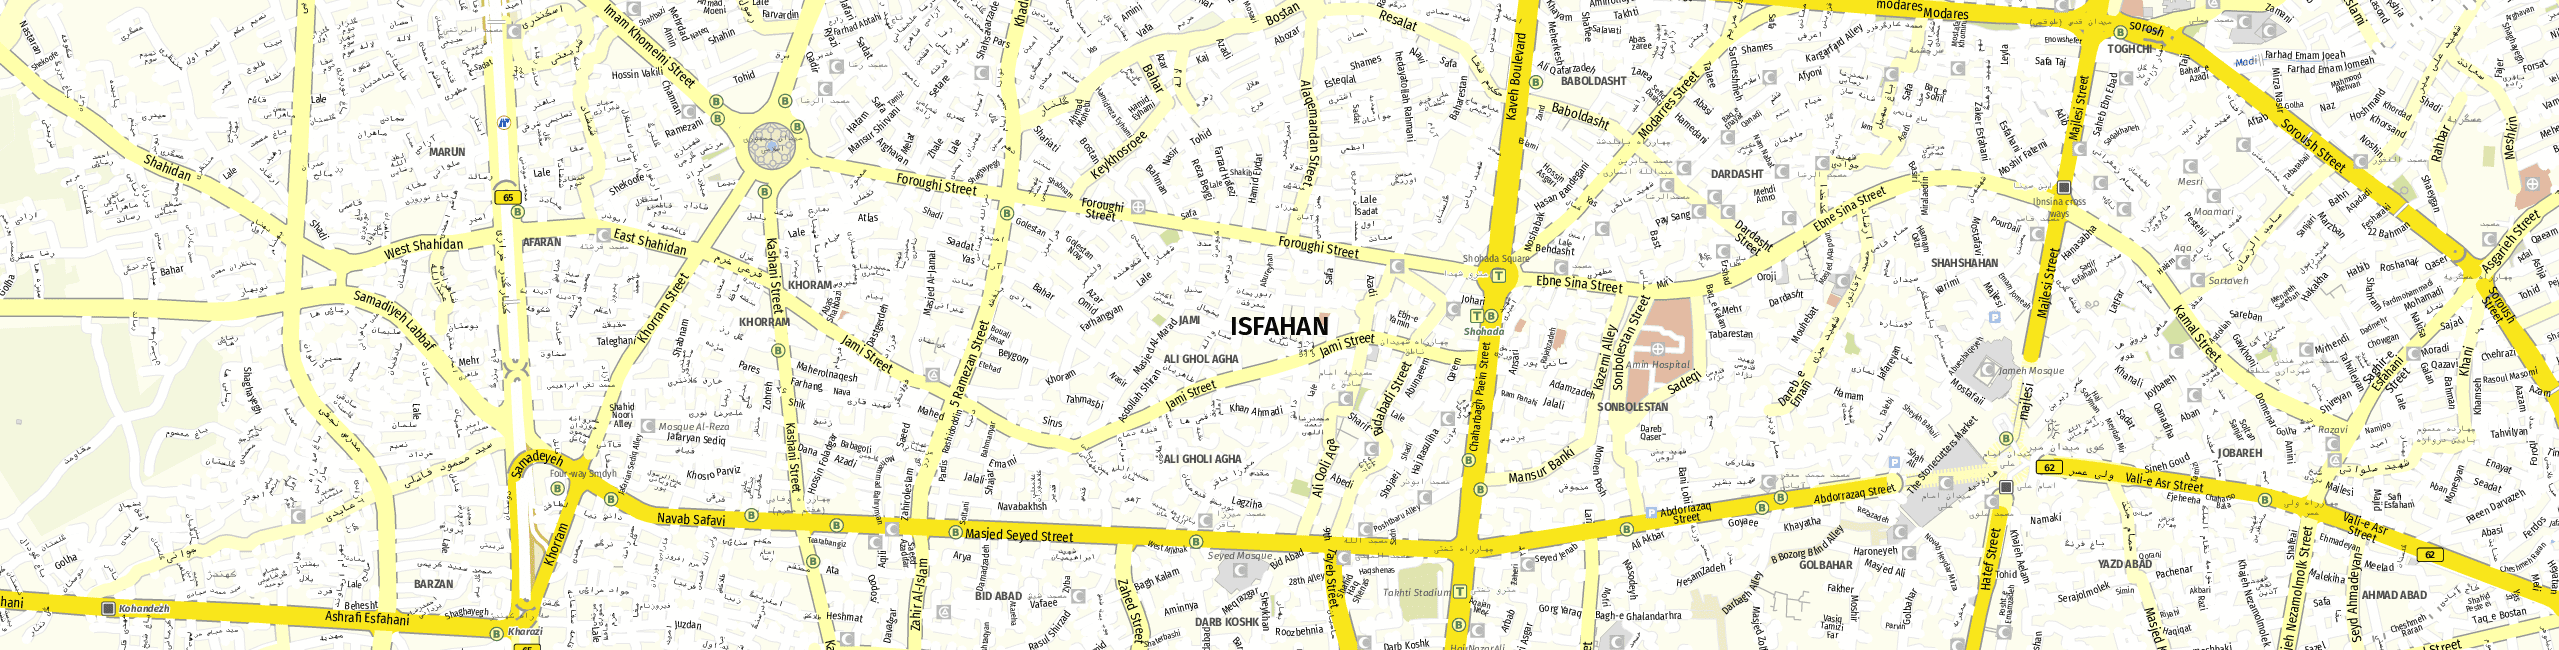 Stadtplan Isfahan zum Downloaden.